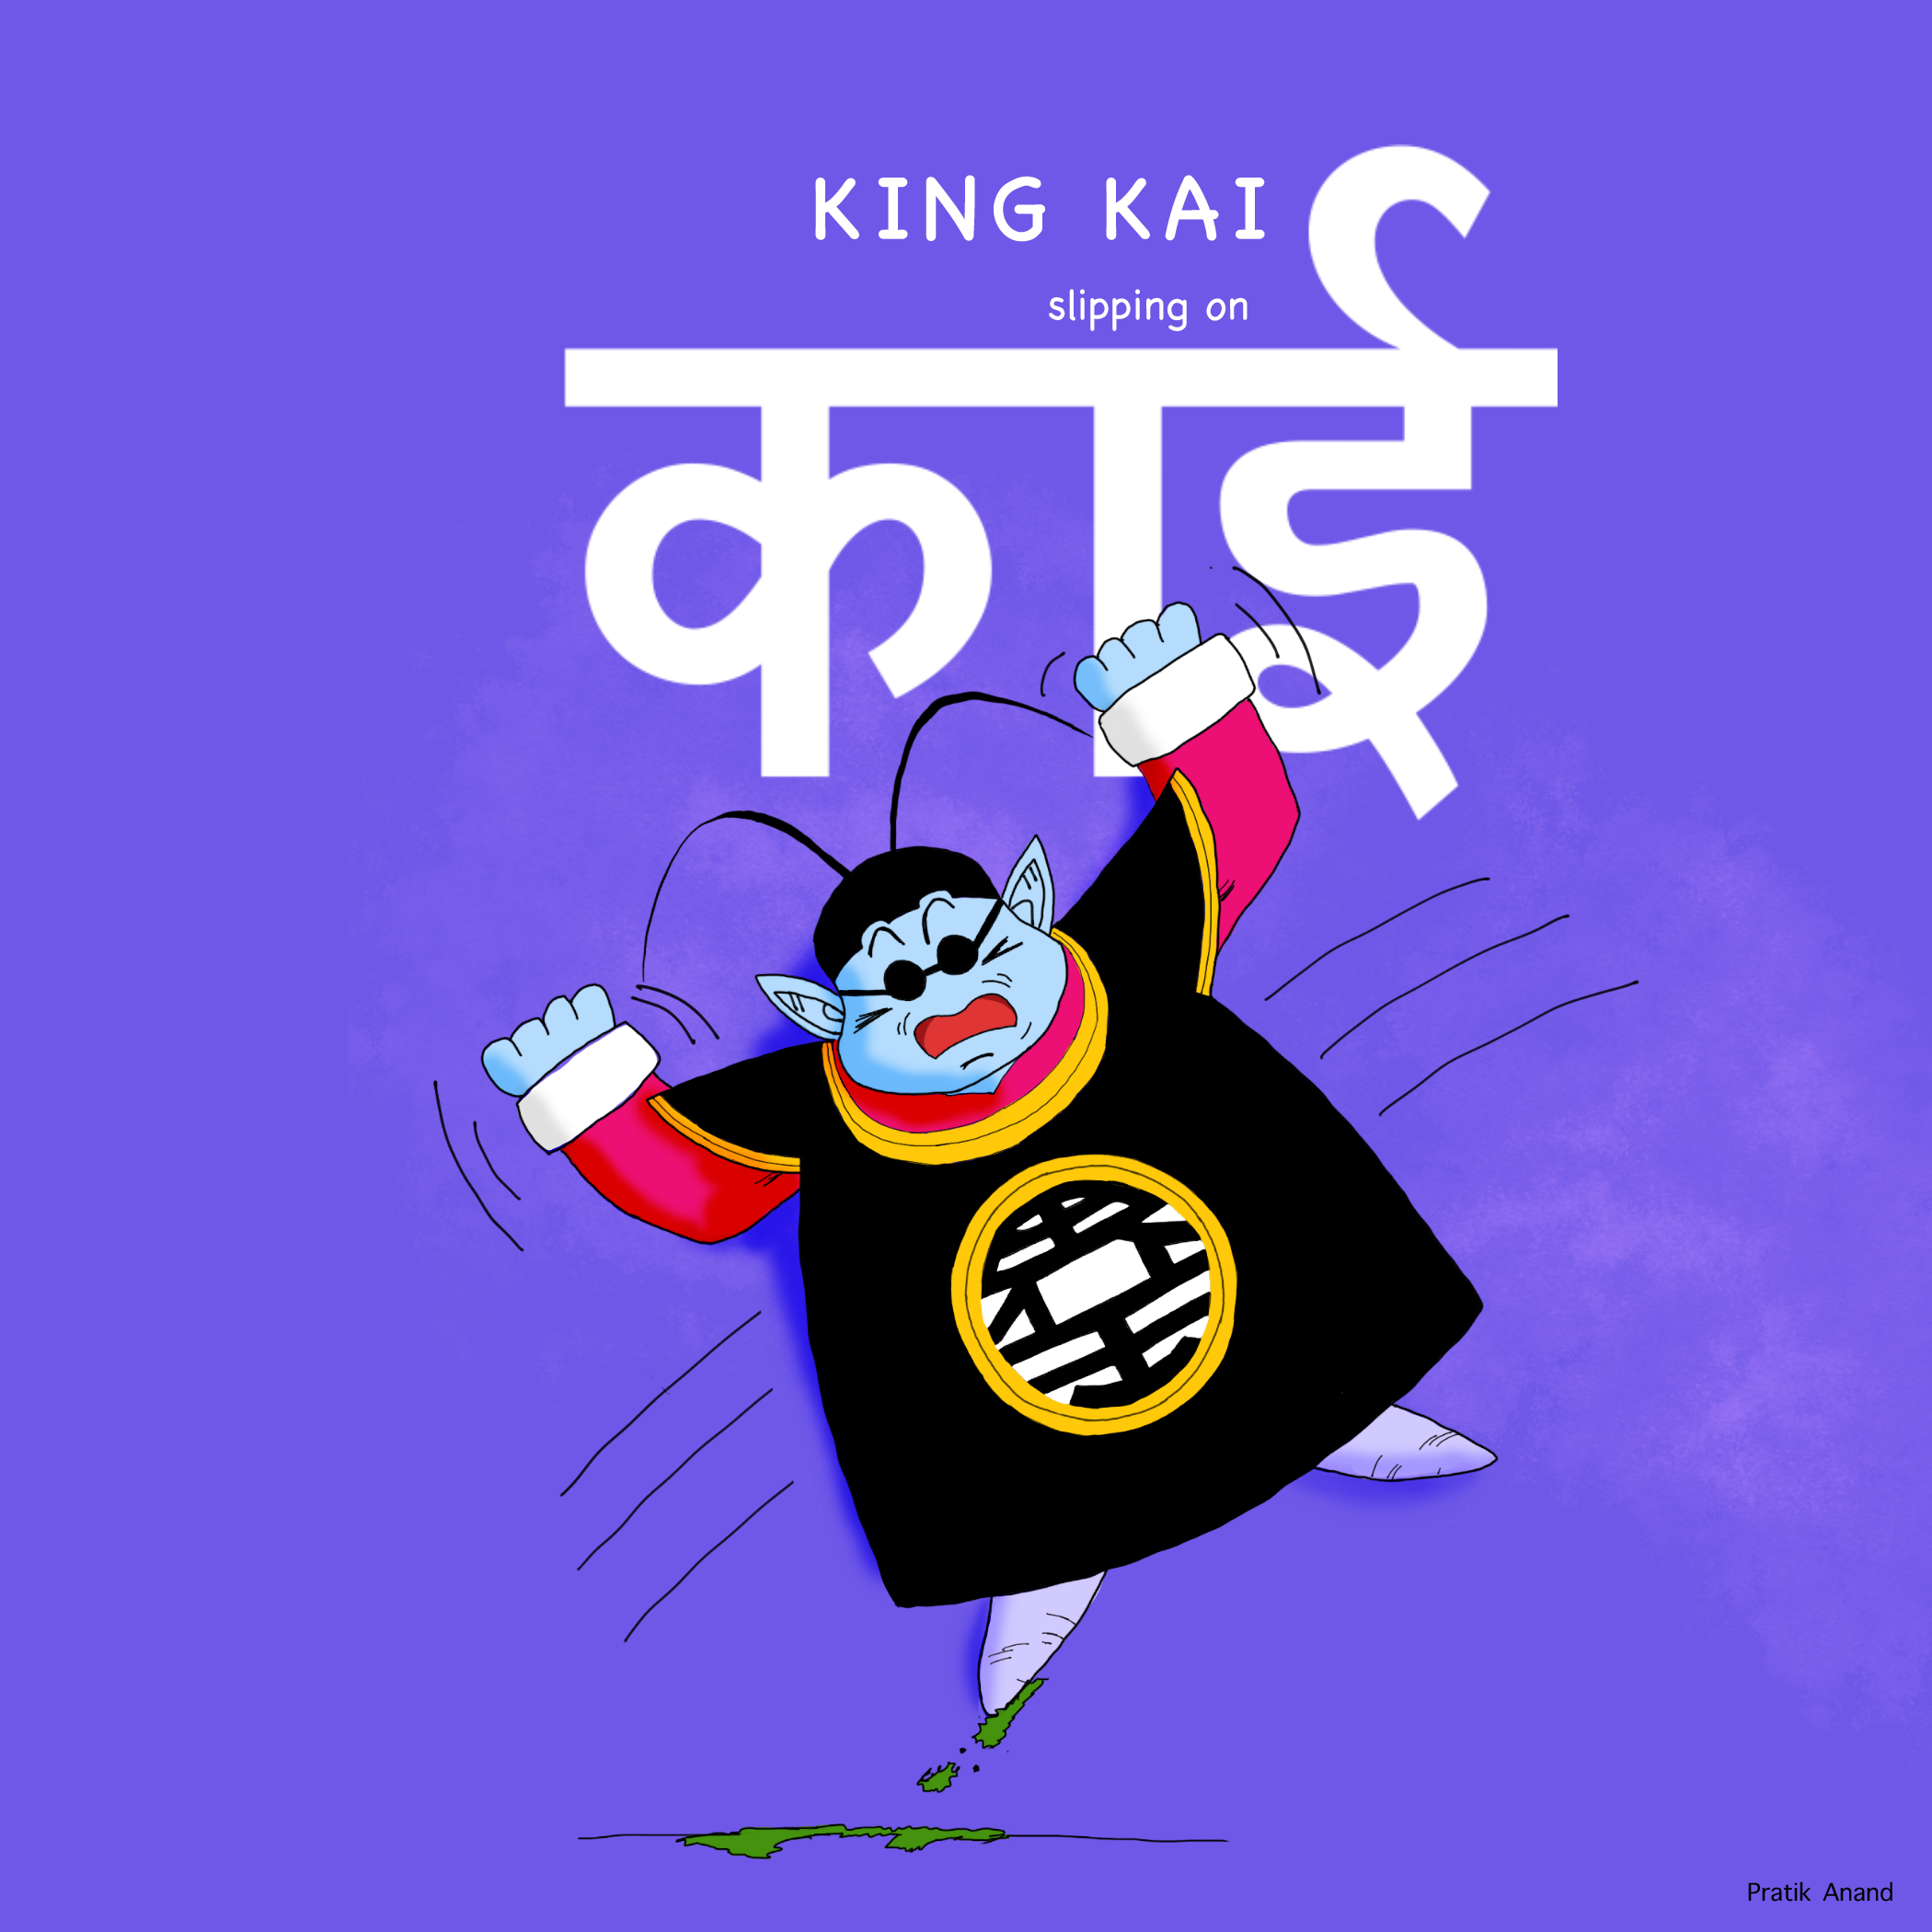 King kai